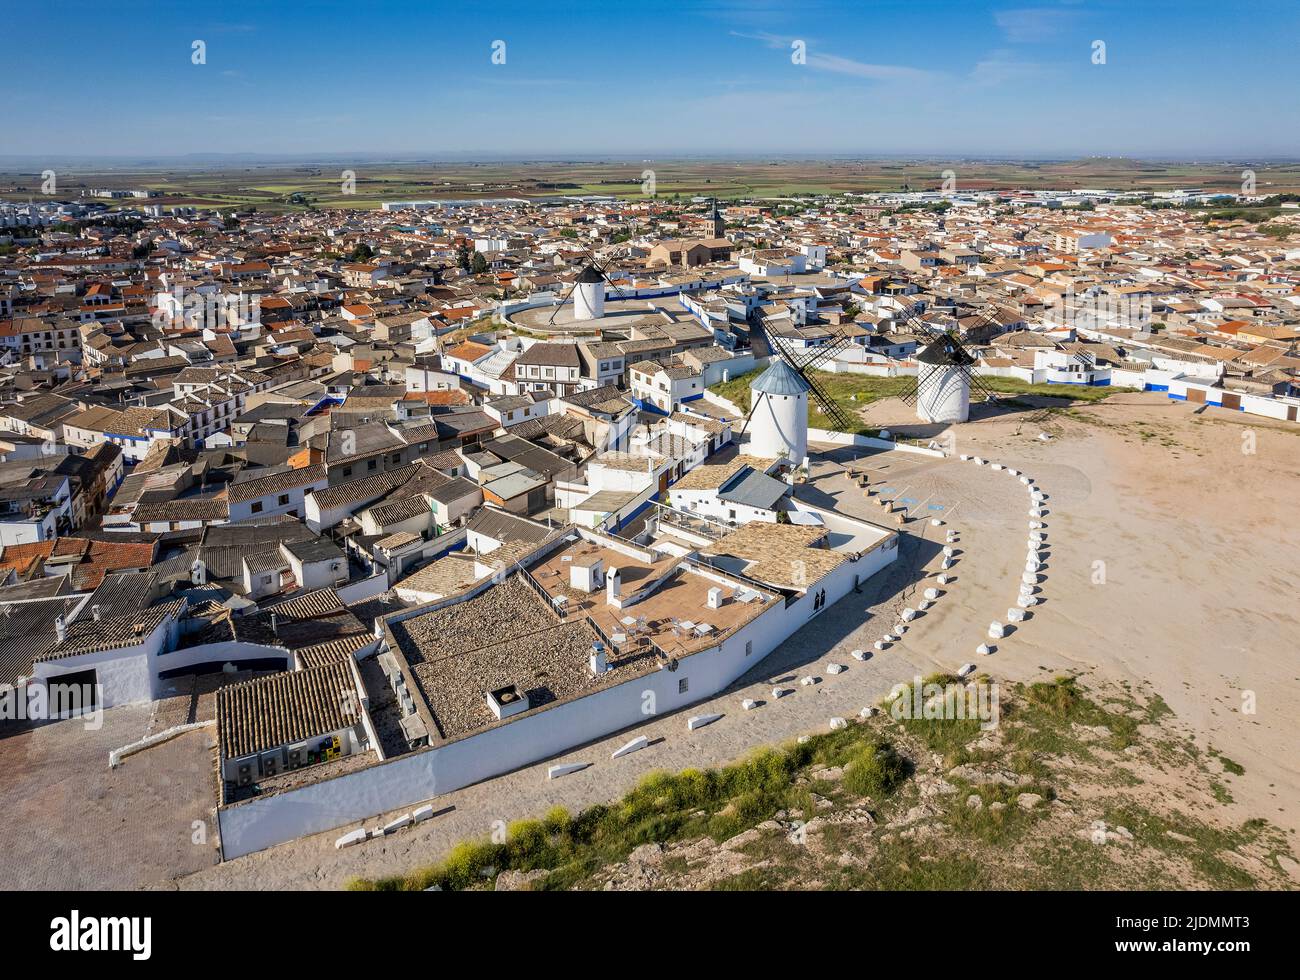 Vue aérienne de Campo de Criptana, Castilla-la Mancha, Espagne Banque D'Images